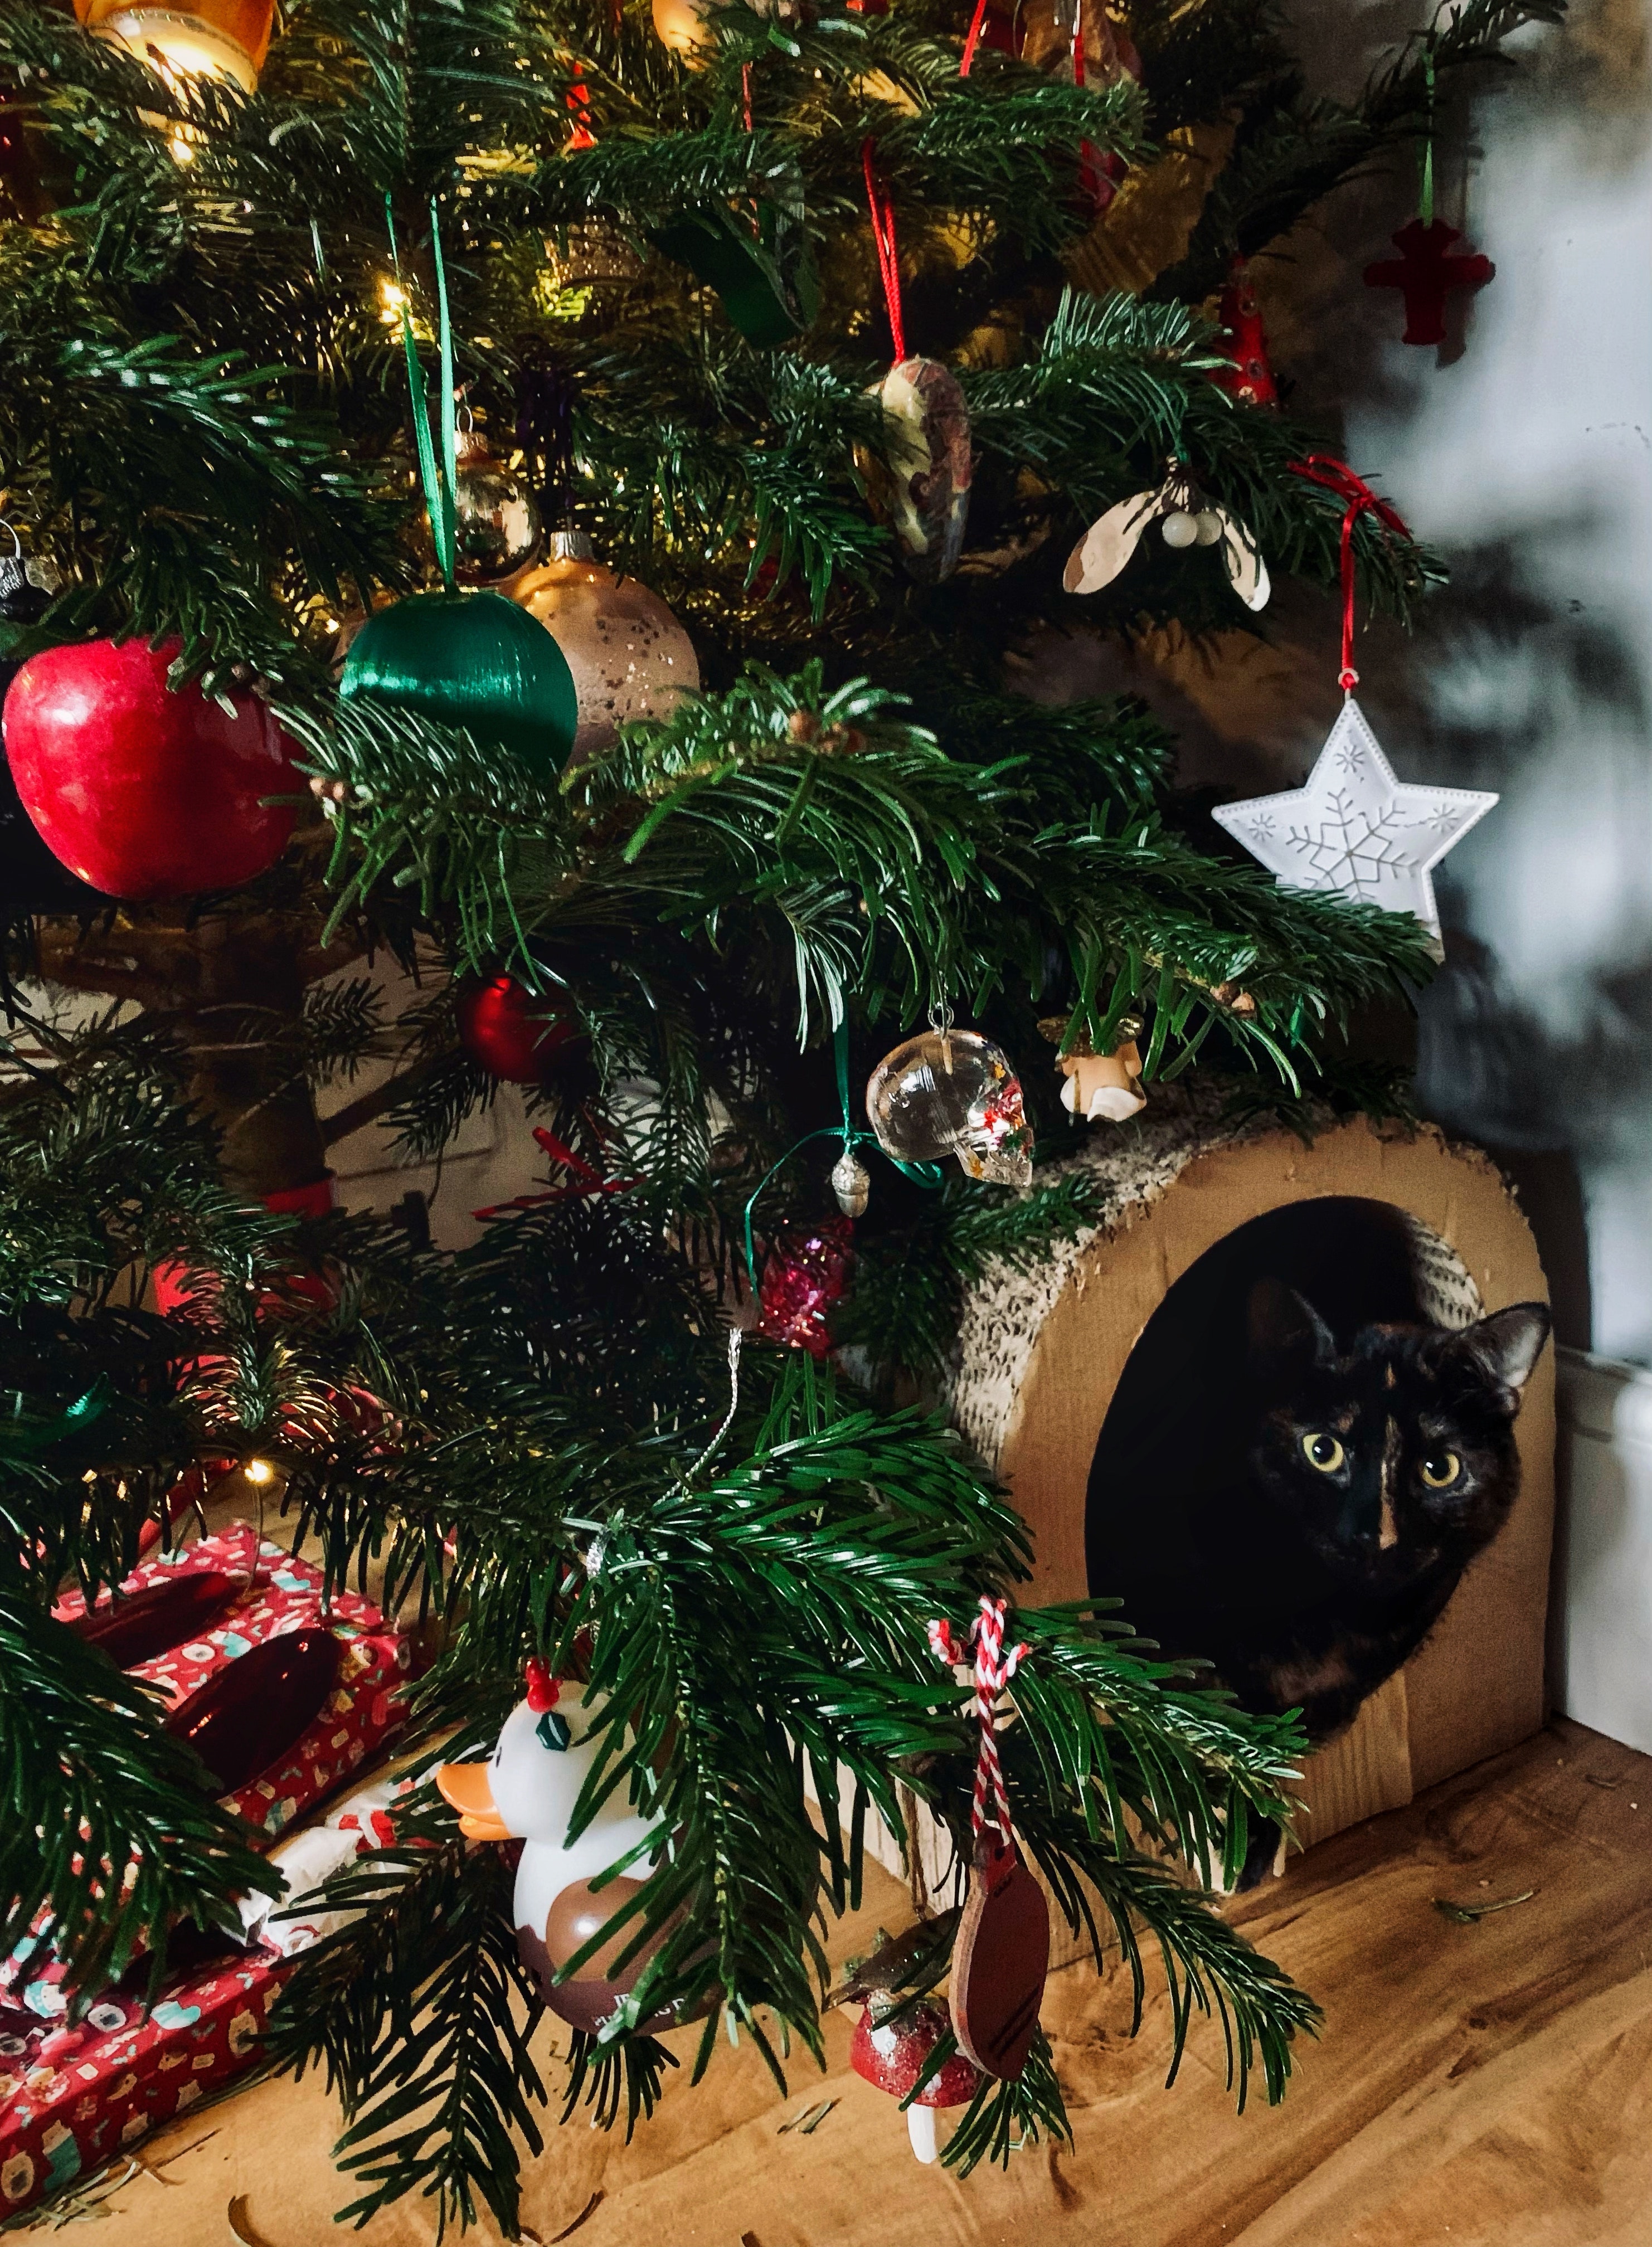 El árbol de Navidad será, la mayoría de las veces, un gran parque de atracciones para los gatos, pero más allá de lo graciosos que pueden llegar a ser en esas circunstancias, pueden estar en peligro tanto ellos como alguna persona que esté cerca